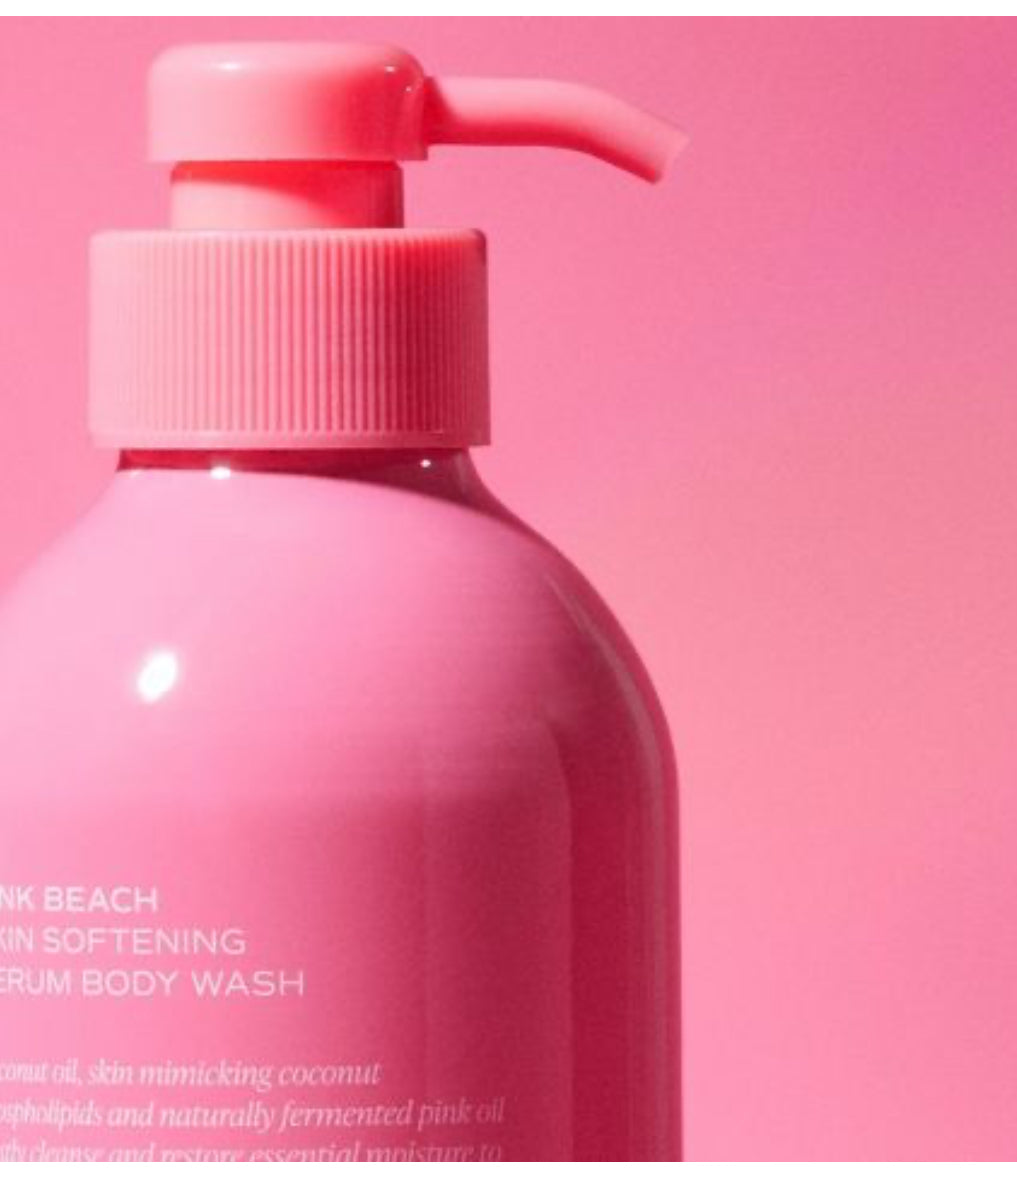 Saltair Pink Beach Serum Body Wash - Coconut Scent - 17 fl oz